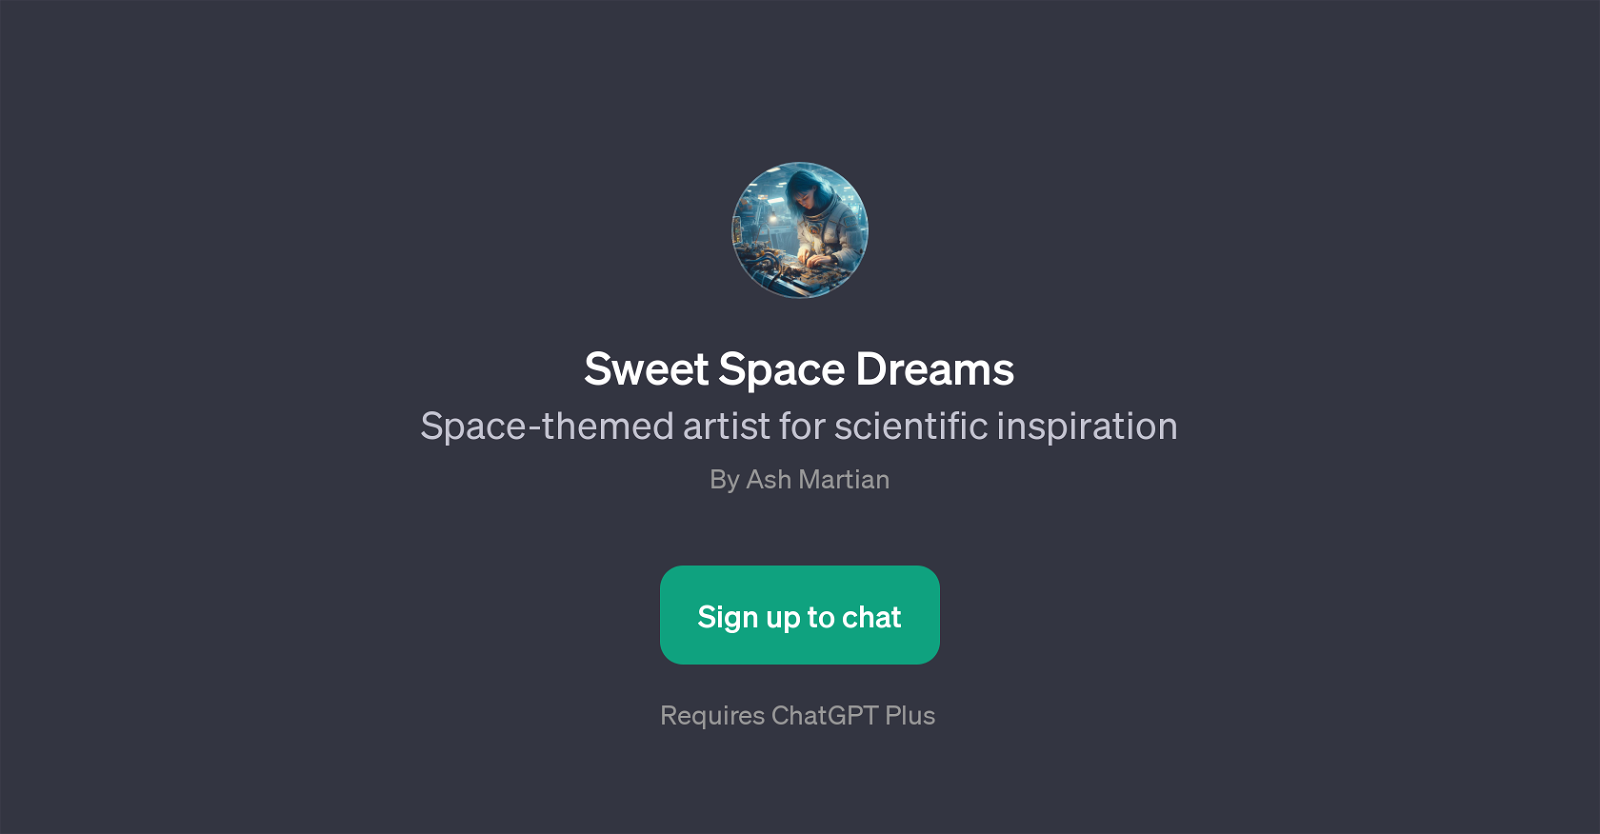 Sweet Space Dreams website